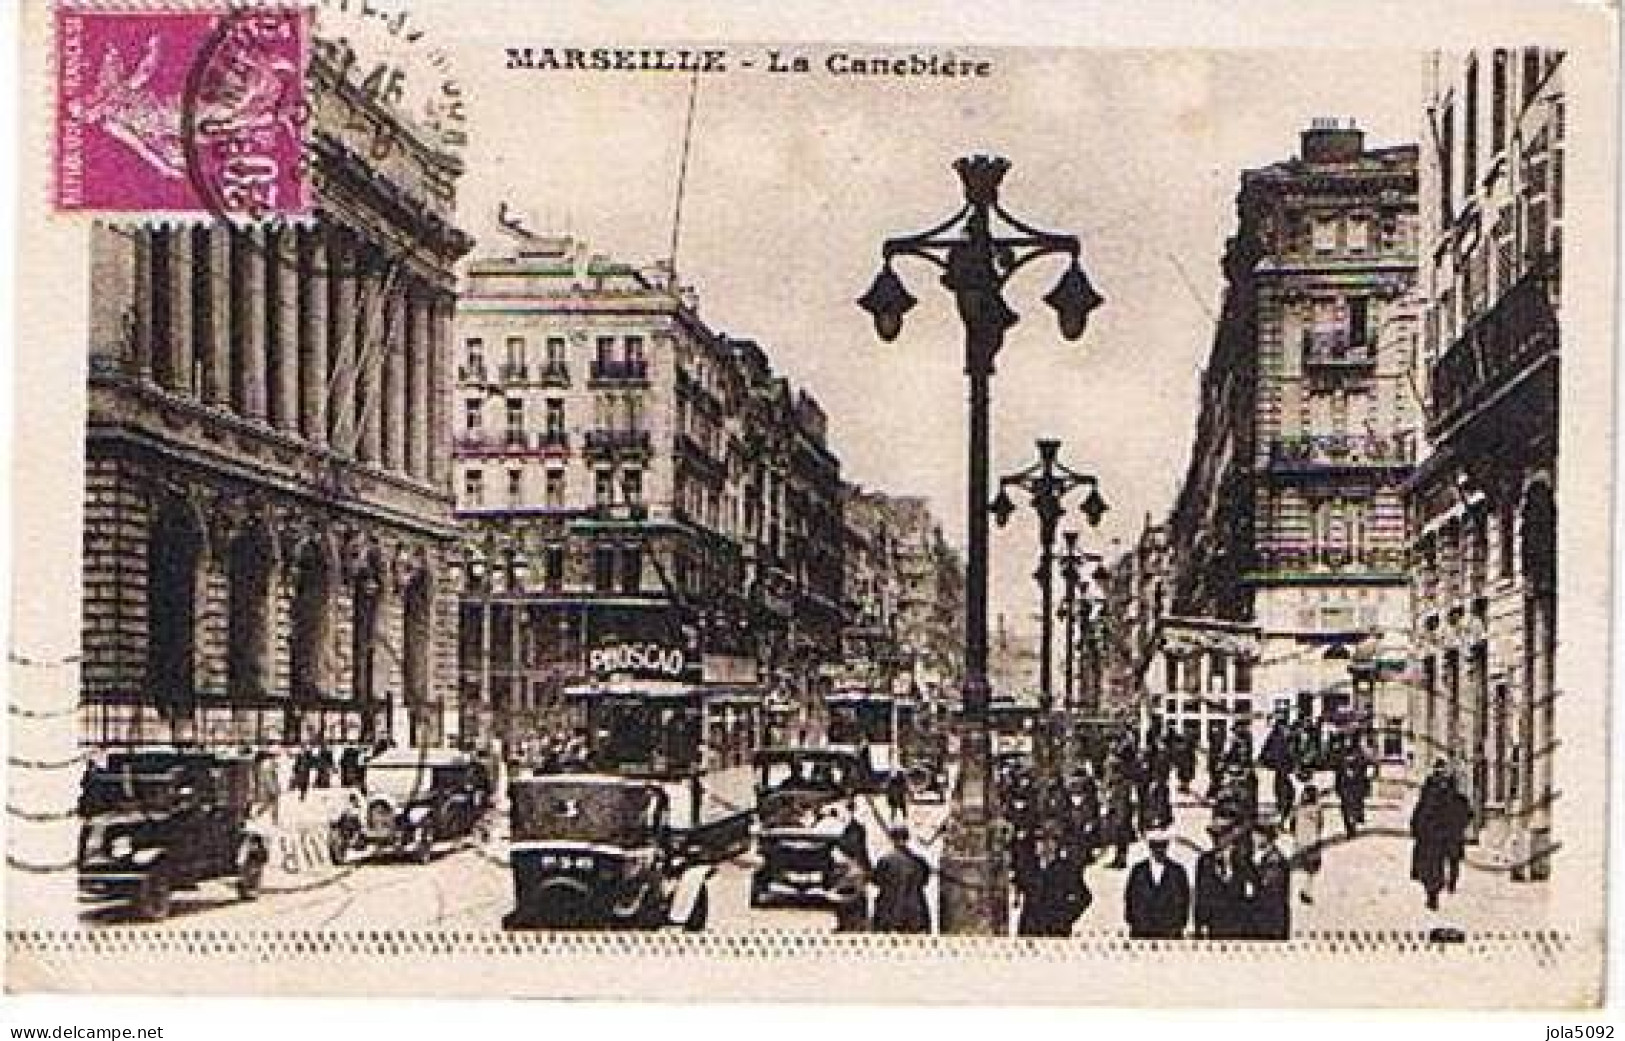 13 - MARSEILLE - La Canebière - The Canebière, City Centre